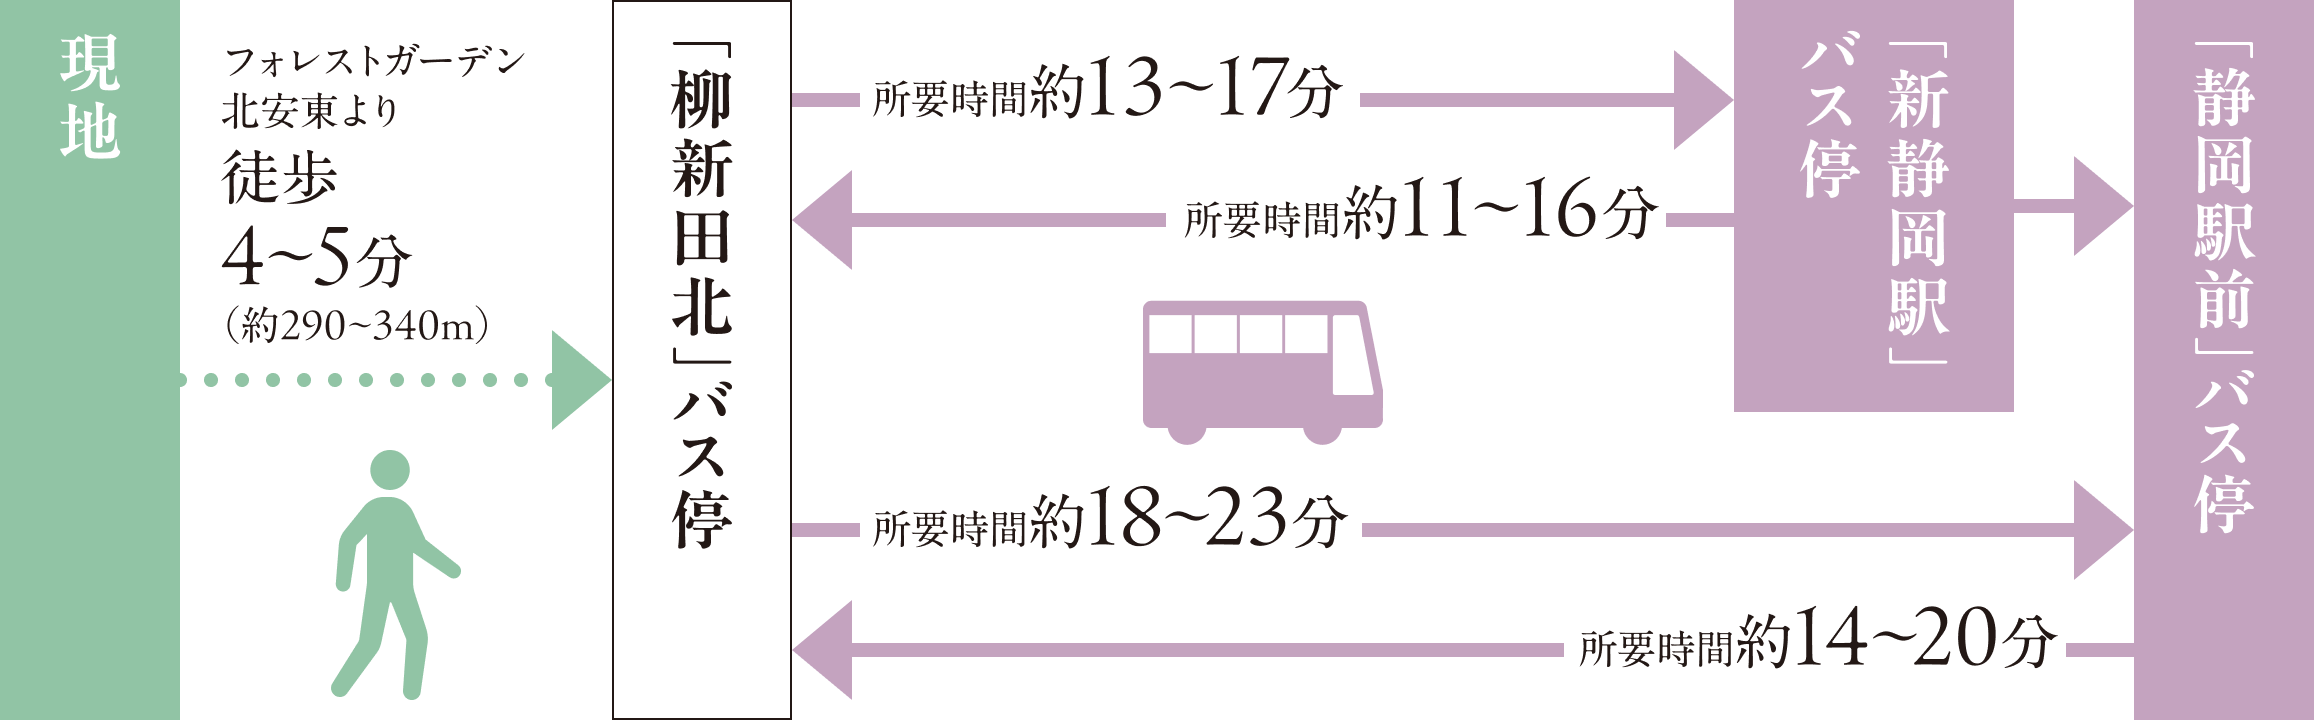 「柳新田北」バス停（上足洗線）の所要時間